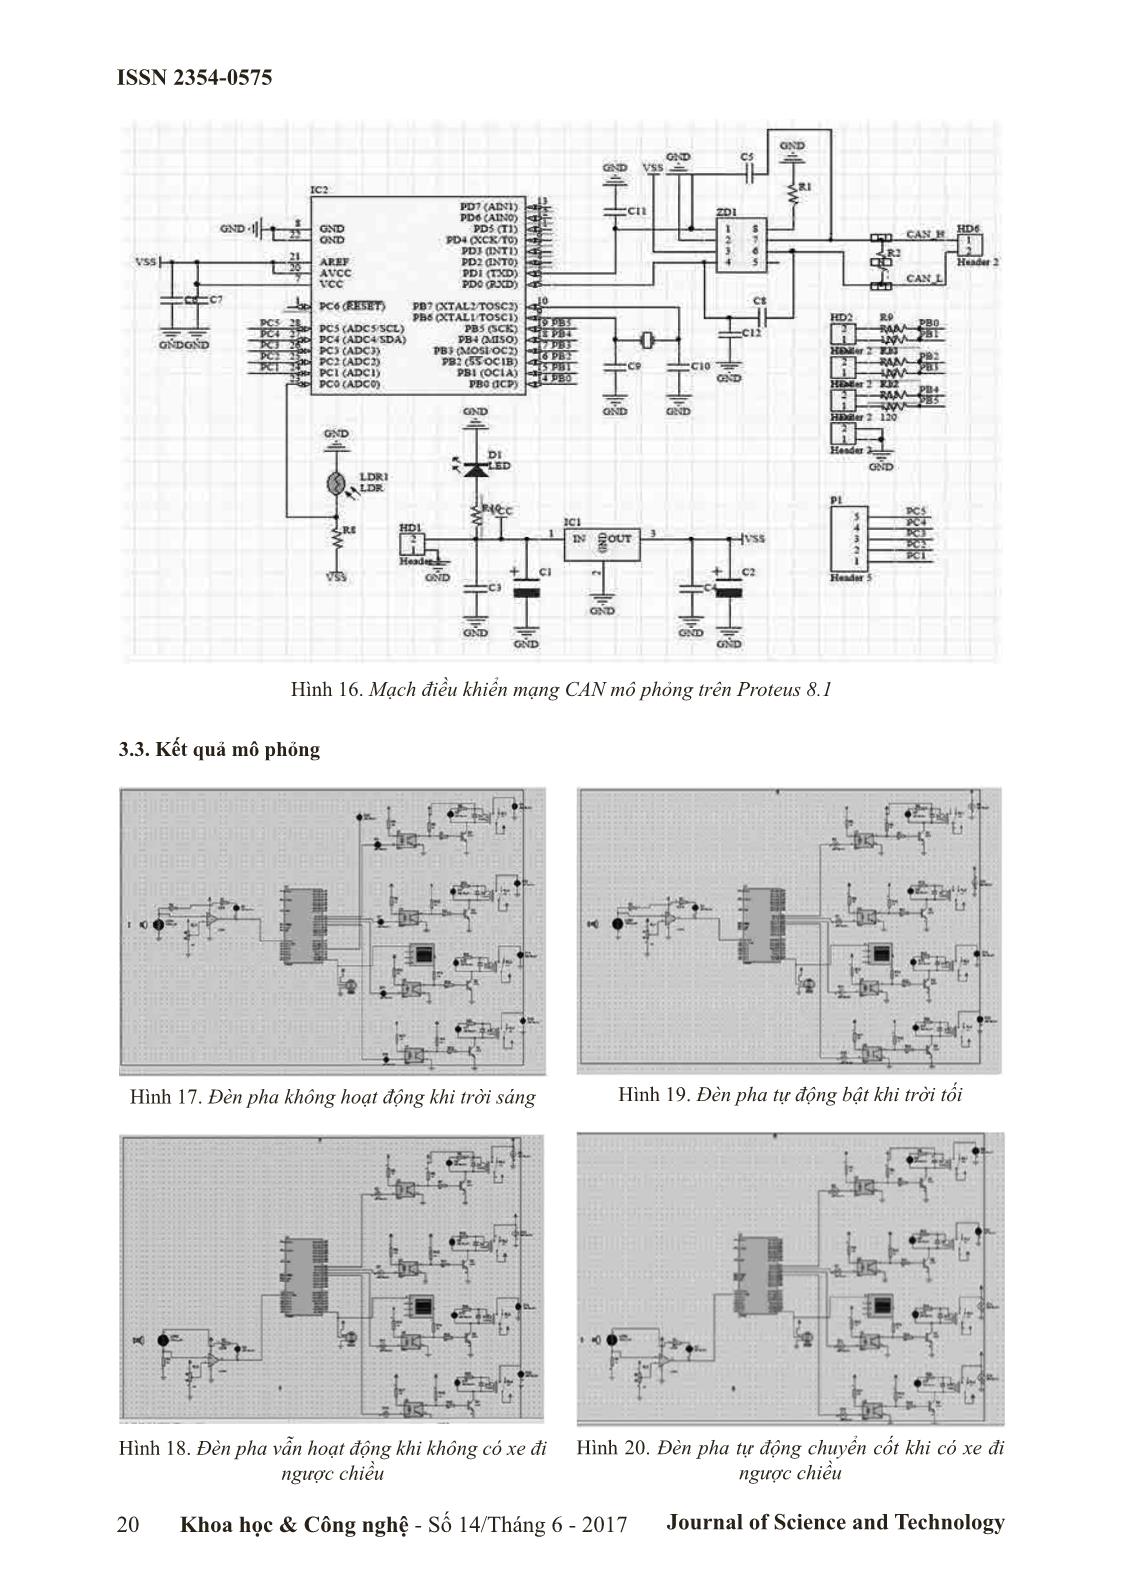 Nghiên cứu mô phỏng mạch thiết kế điều khiển đèn pha ô tô bằng mạng can sử dụng phần mềm proteus 8.1 trang 5